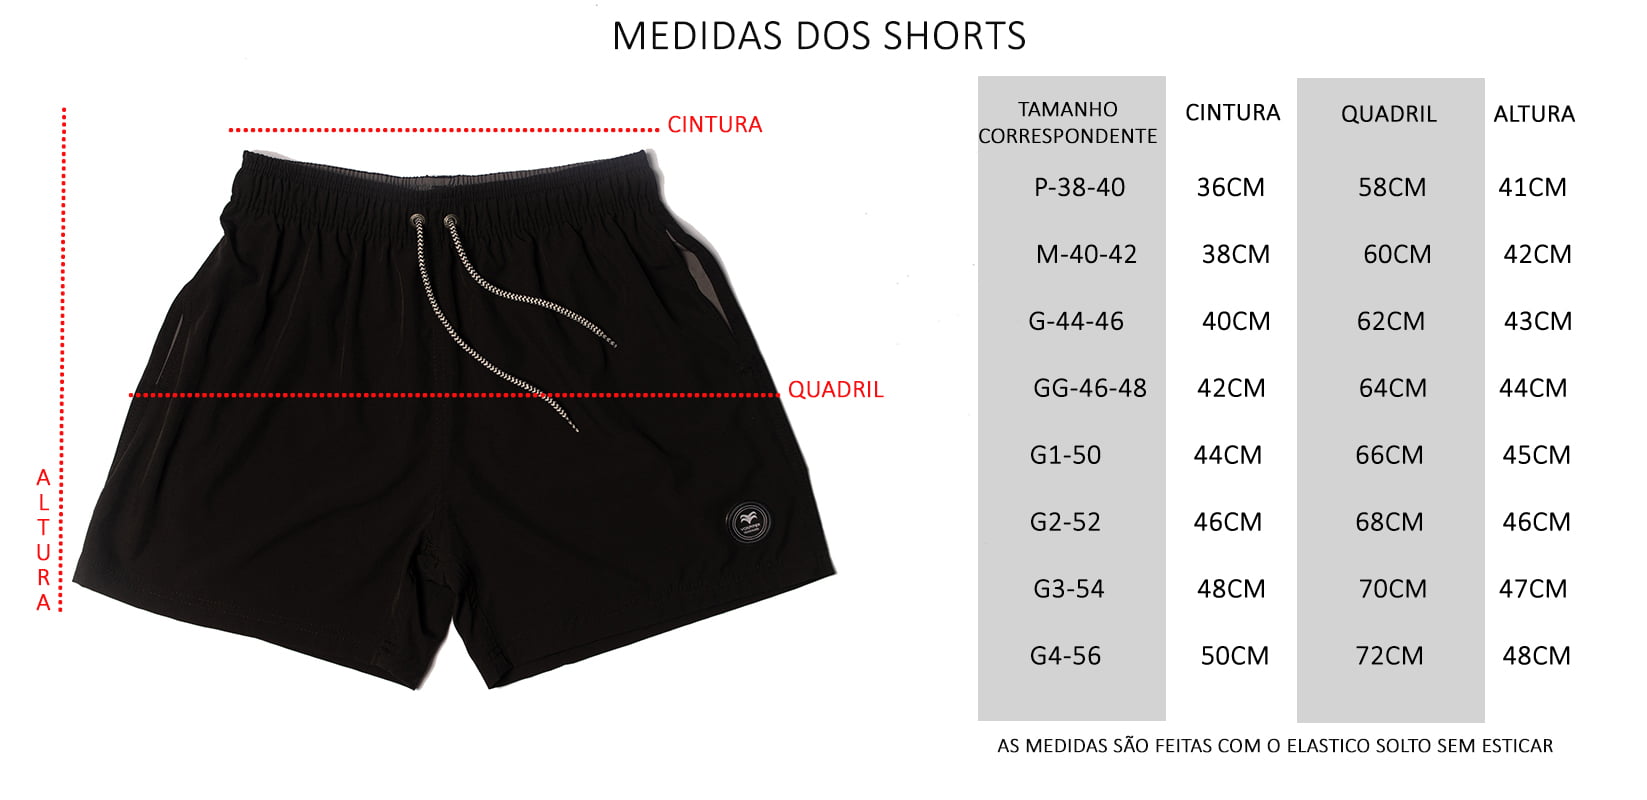 Tabela de Medidas Dos Shorts